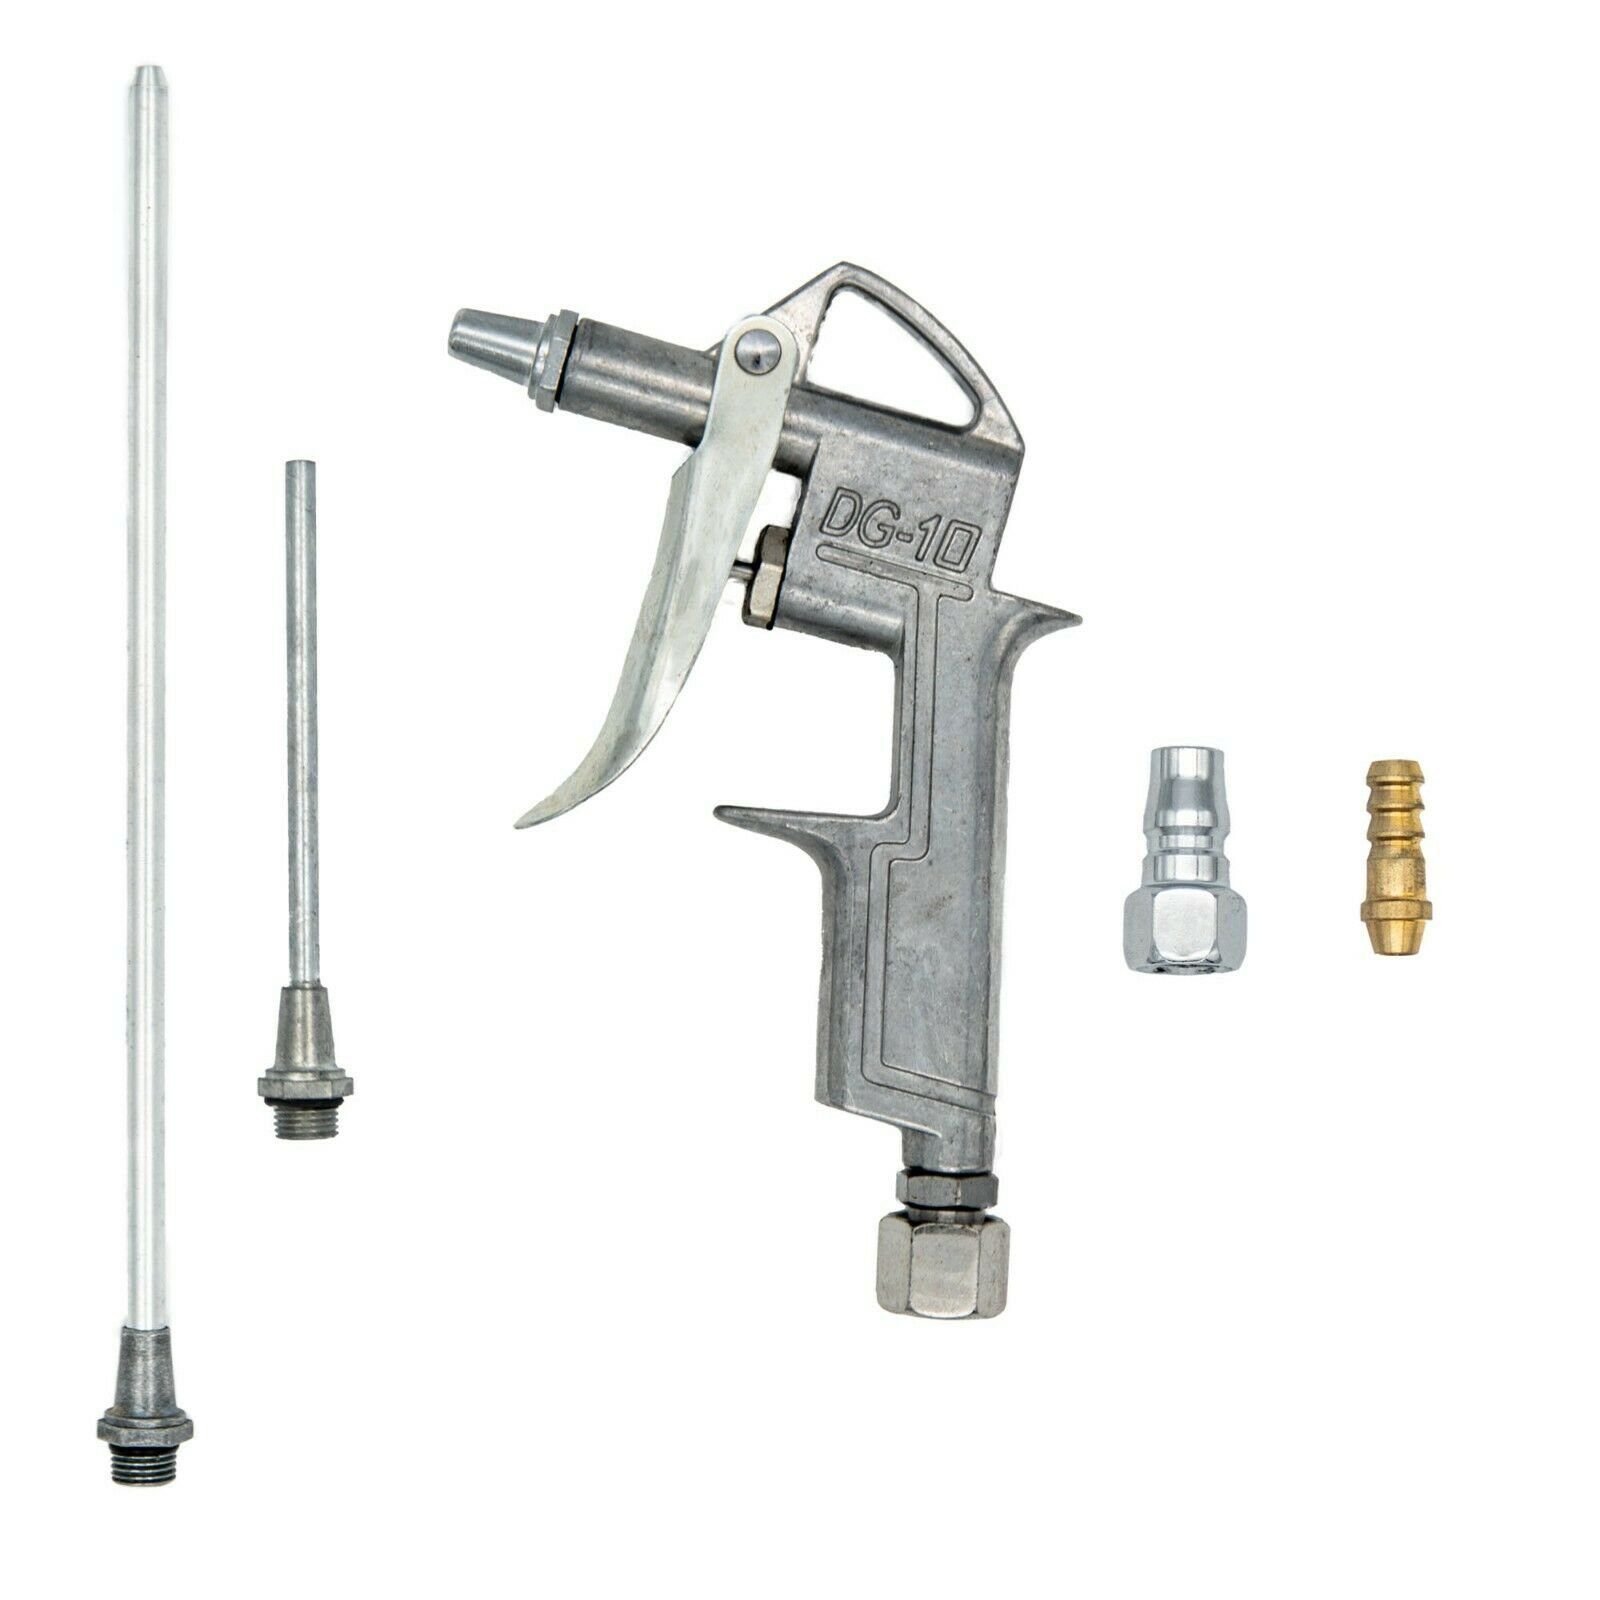 BENSON Druckluftwerkzeug Druckluftpistole Luftpistole Ausblaspistole, Set, Luft tlg Druckluft, Kompressor, 6